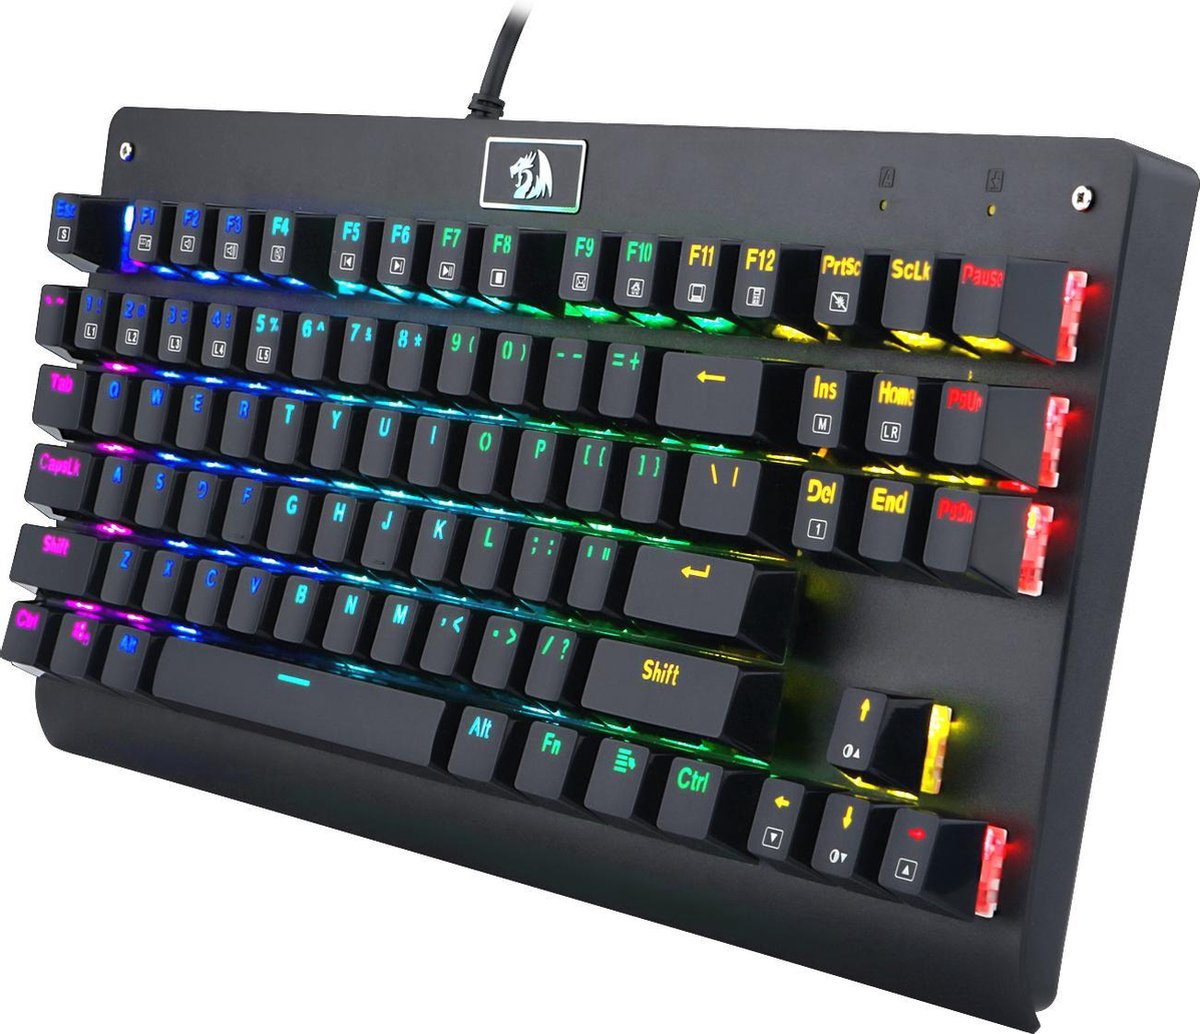 Redragon K568 RGB Dark Avenger Gaming toetsenbord | Spatwater proef en Duurzaam design - Blue Switches met N-key Rollover - ABS Keycaps